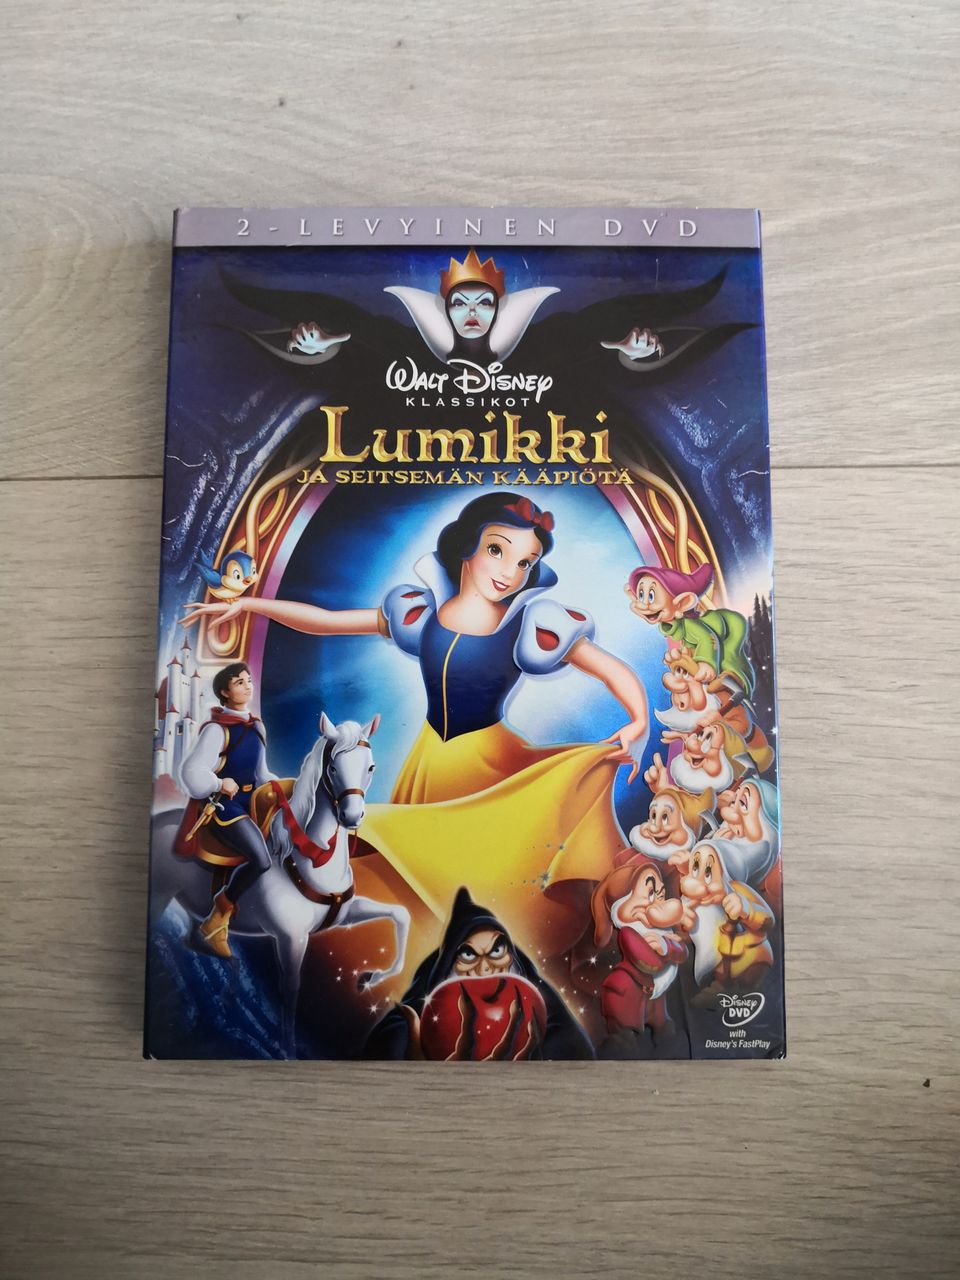 Disneyn Lumikki ja seitsemän kääpiötä 2-levyinen DVD